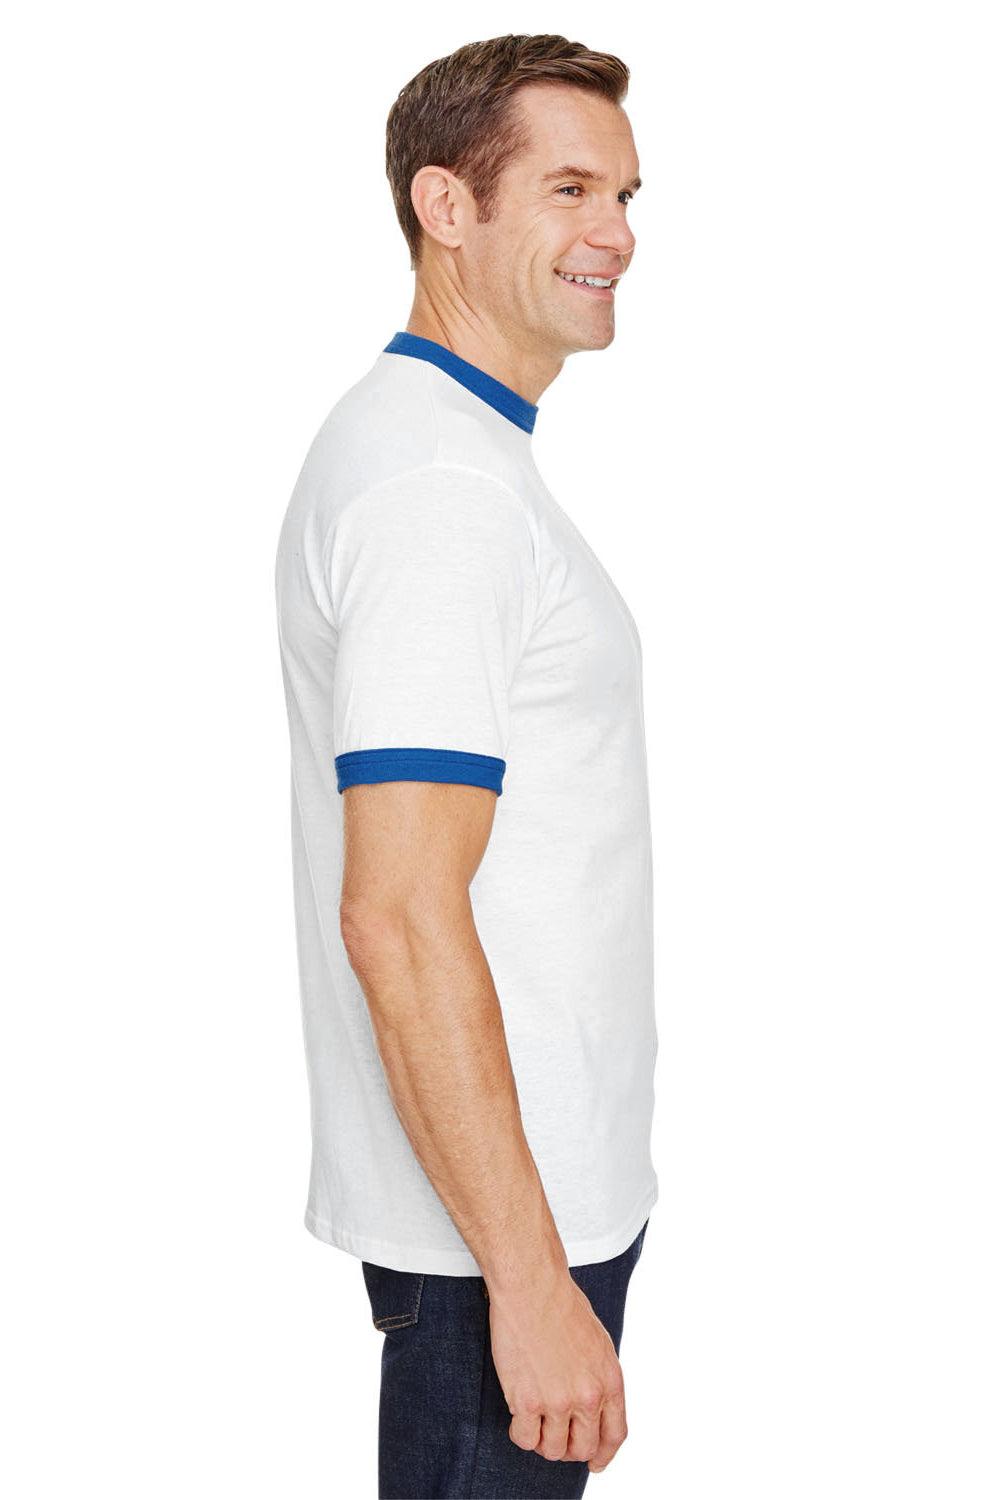 Augusta Sportswear 710 Mens Ringer Short Sleeve Crewneck T-Shirt White/Royal Model Side